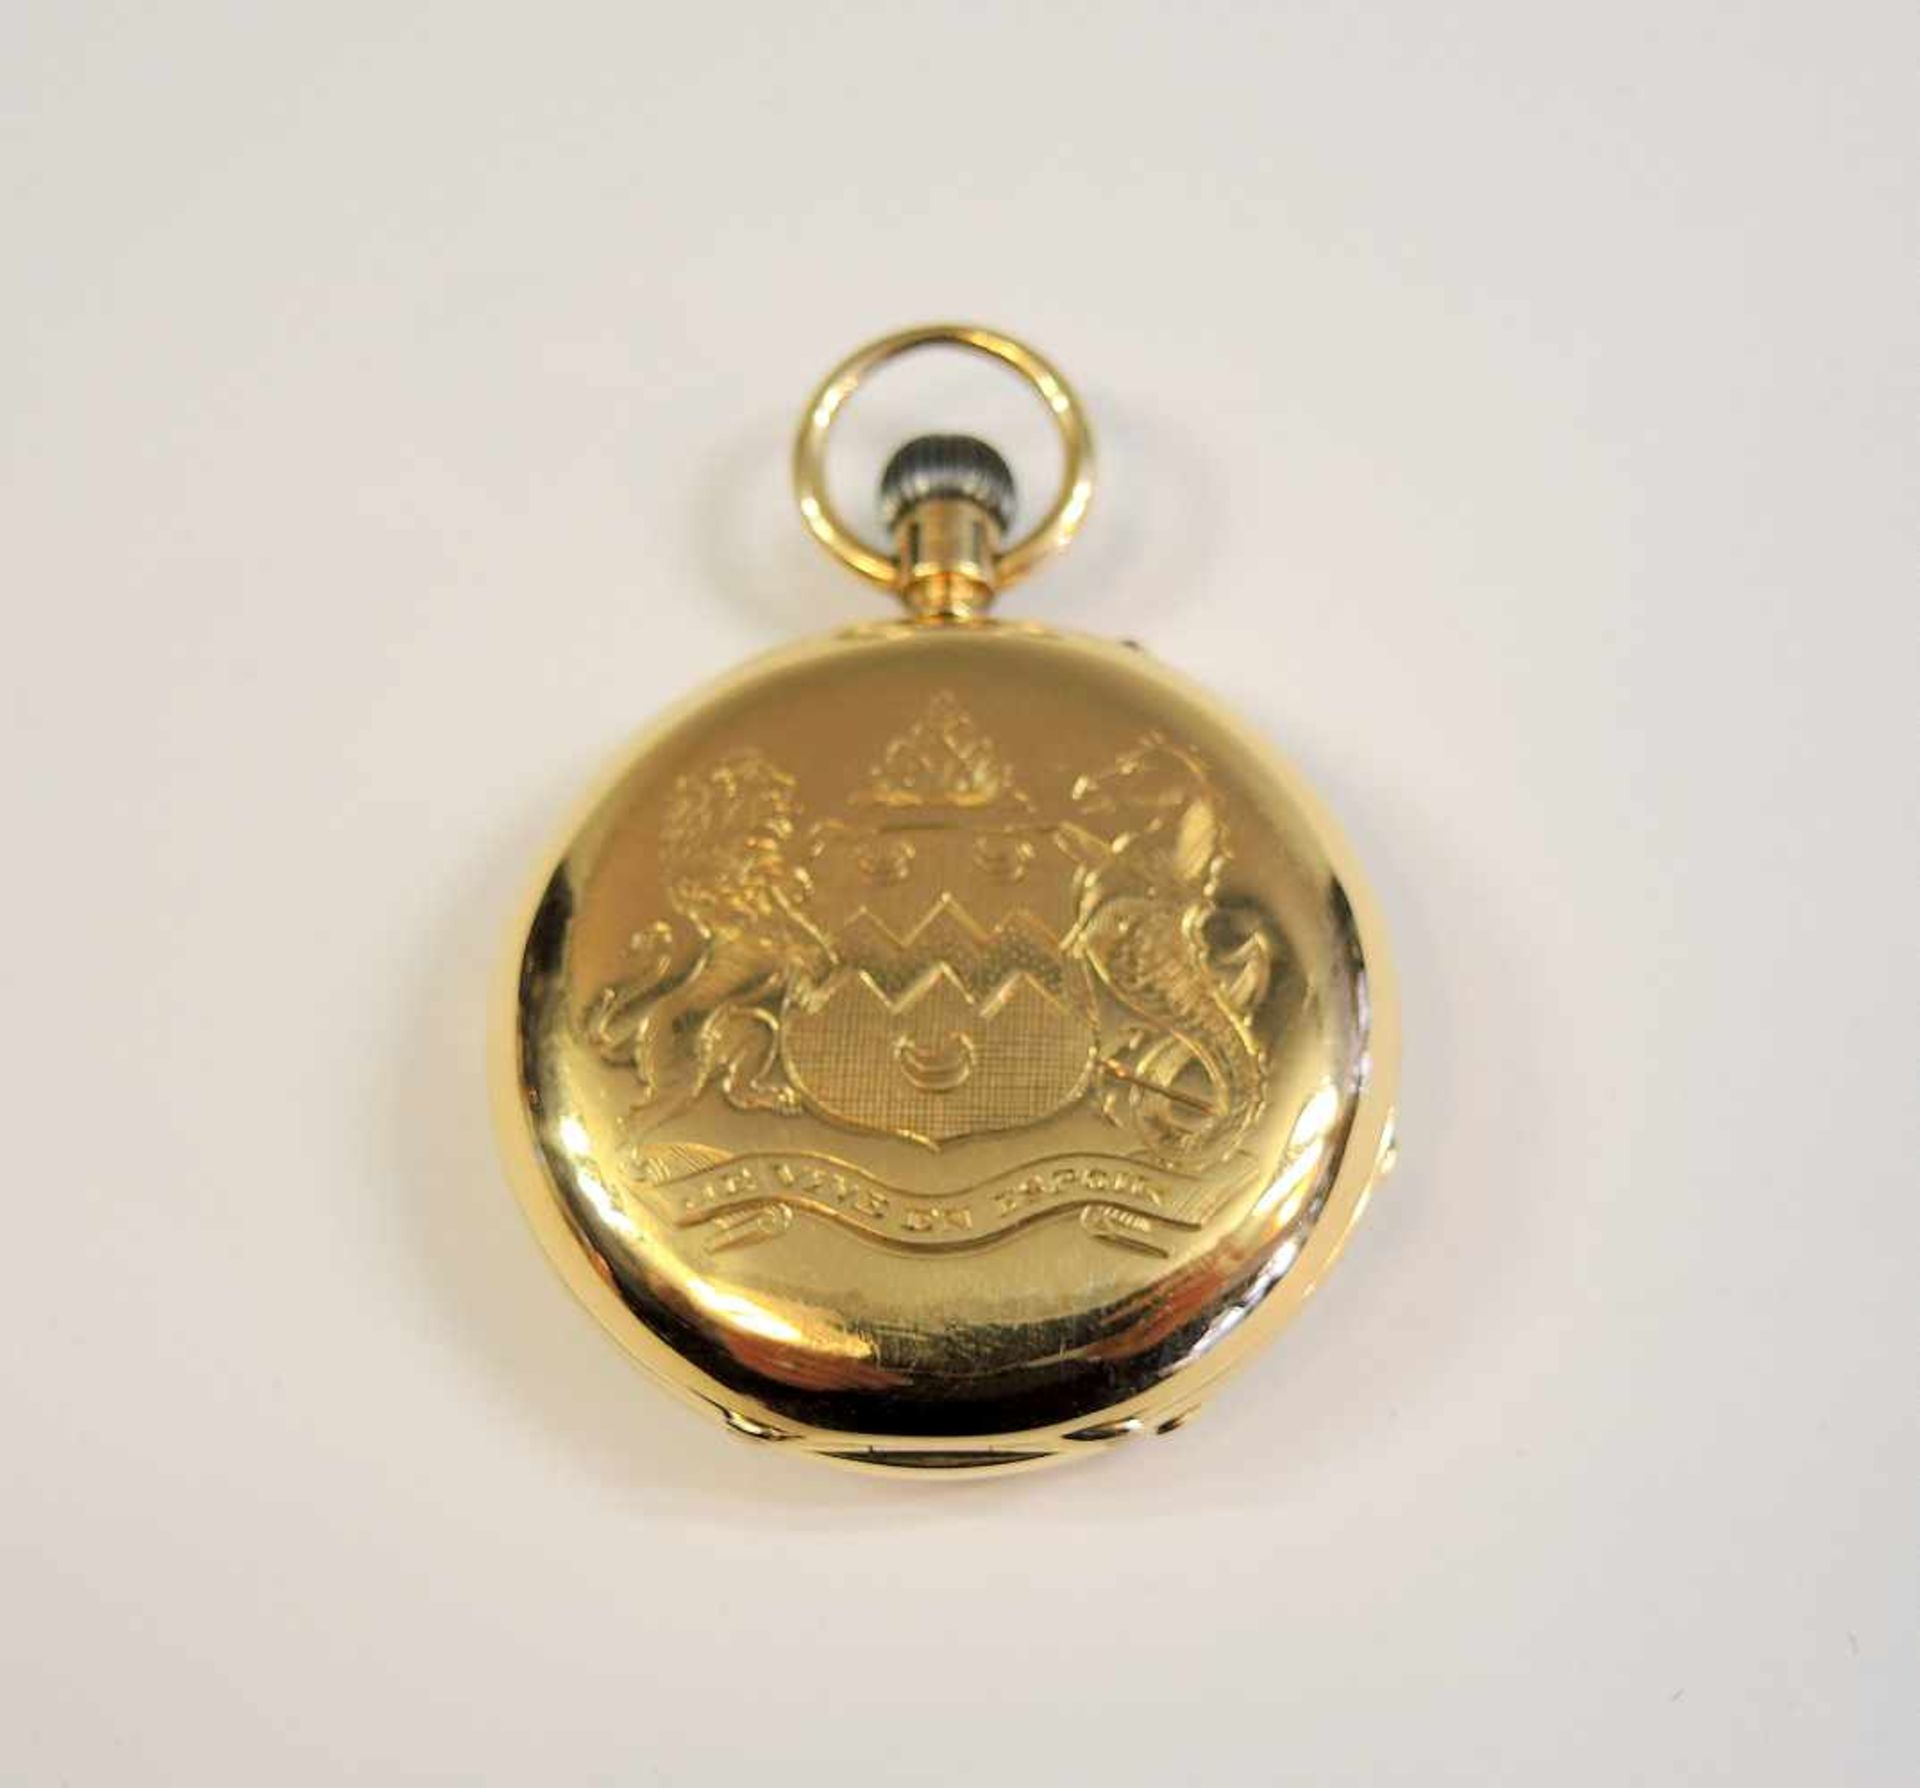 Savonette Taschenuhr 18 K. Gold, Firma Benson - London. Frontdeckel mit feiner Wappengravur. Voll - Bild 2 aus 3